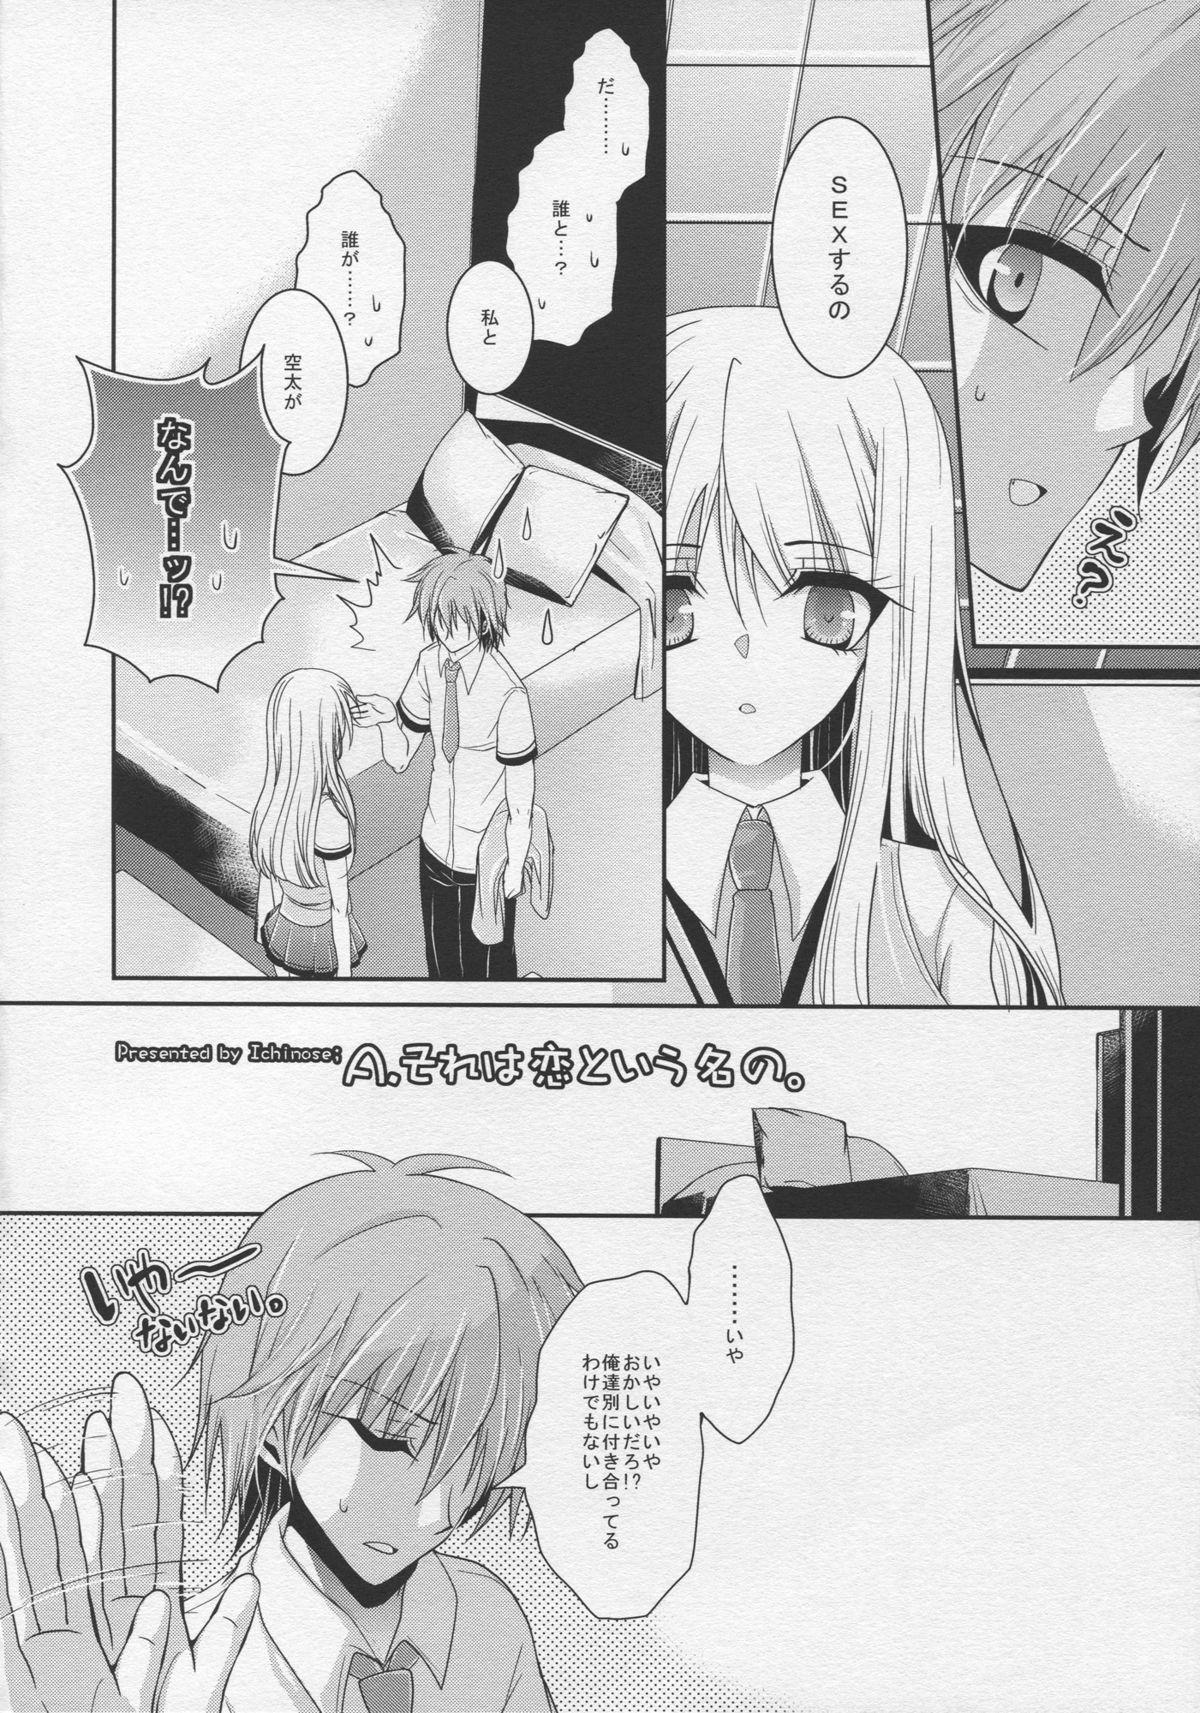 Three Some A. Sore wa Koi to Iu Na no. - Sakurasou no pet na kanojo Curvy - Page 6